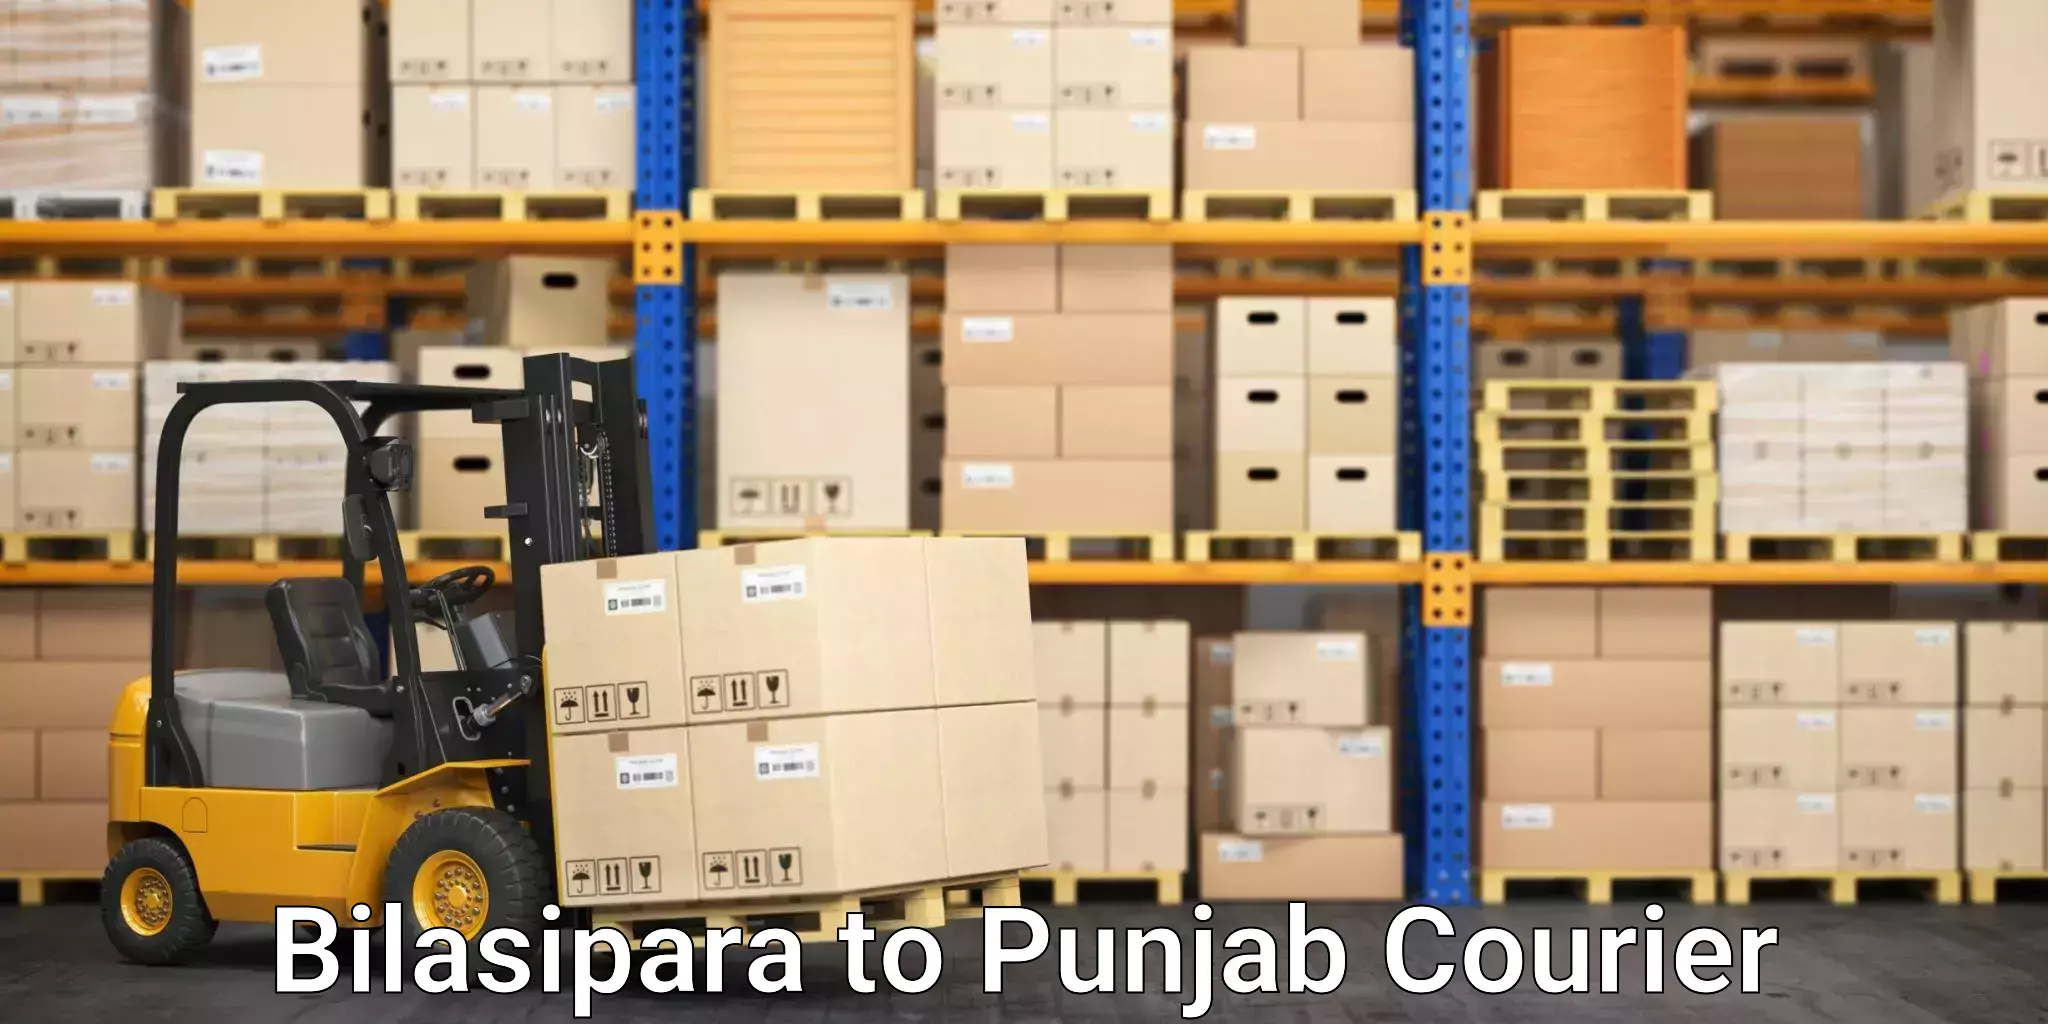 Efficient shipping platforms Bilasipara to Punjab